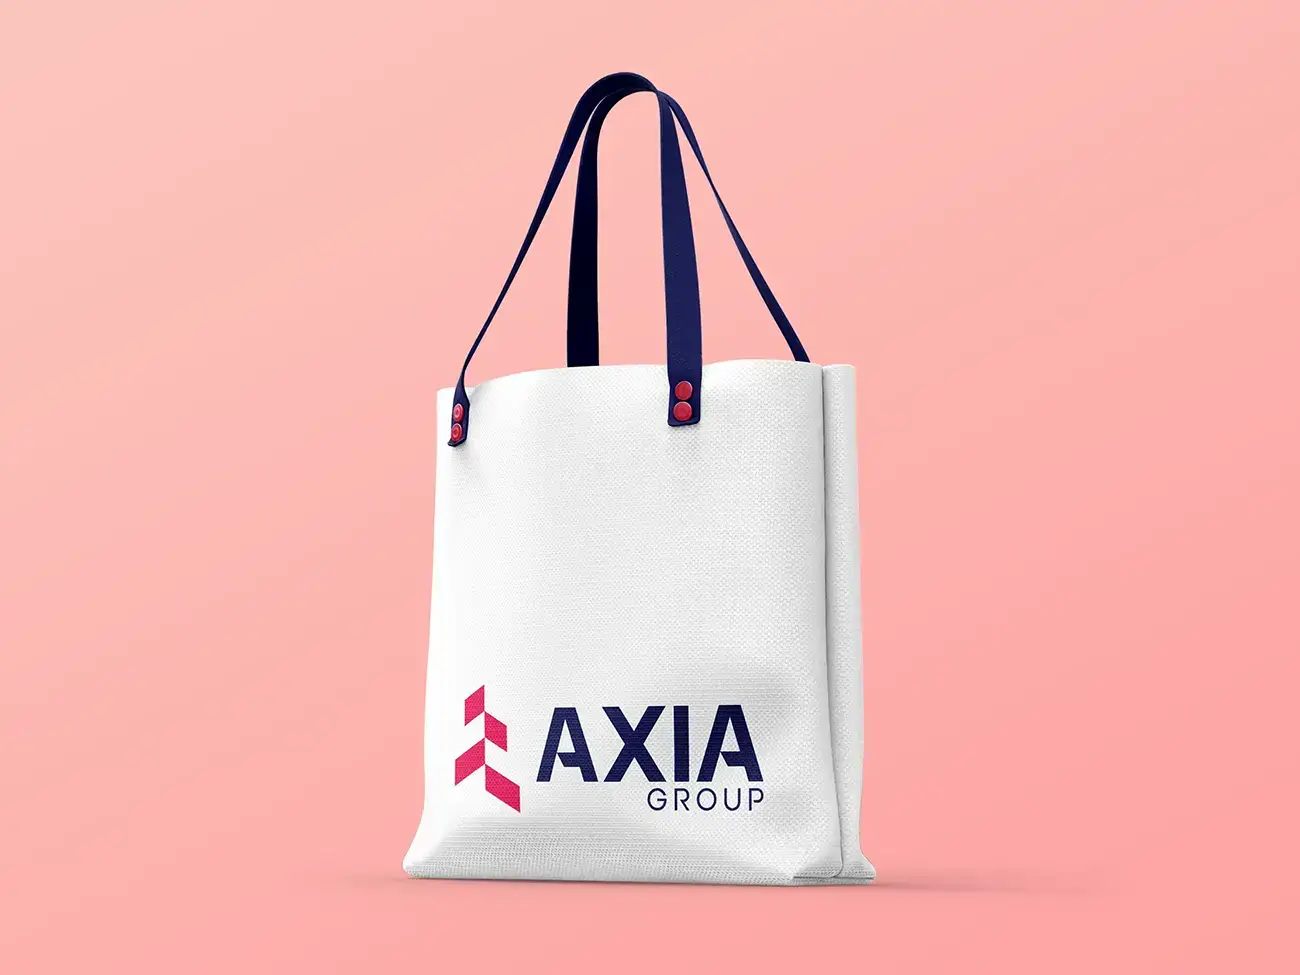 Axia group firmalogo design på taske